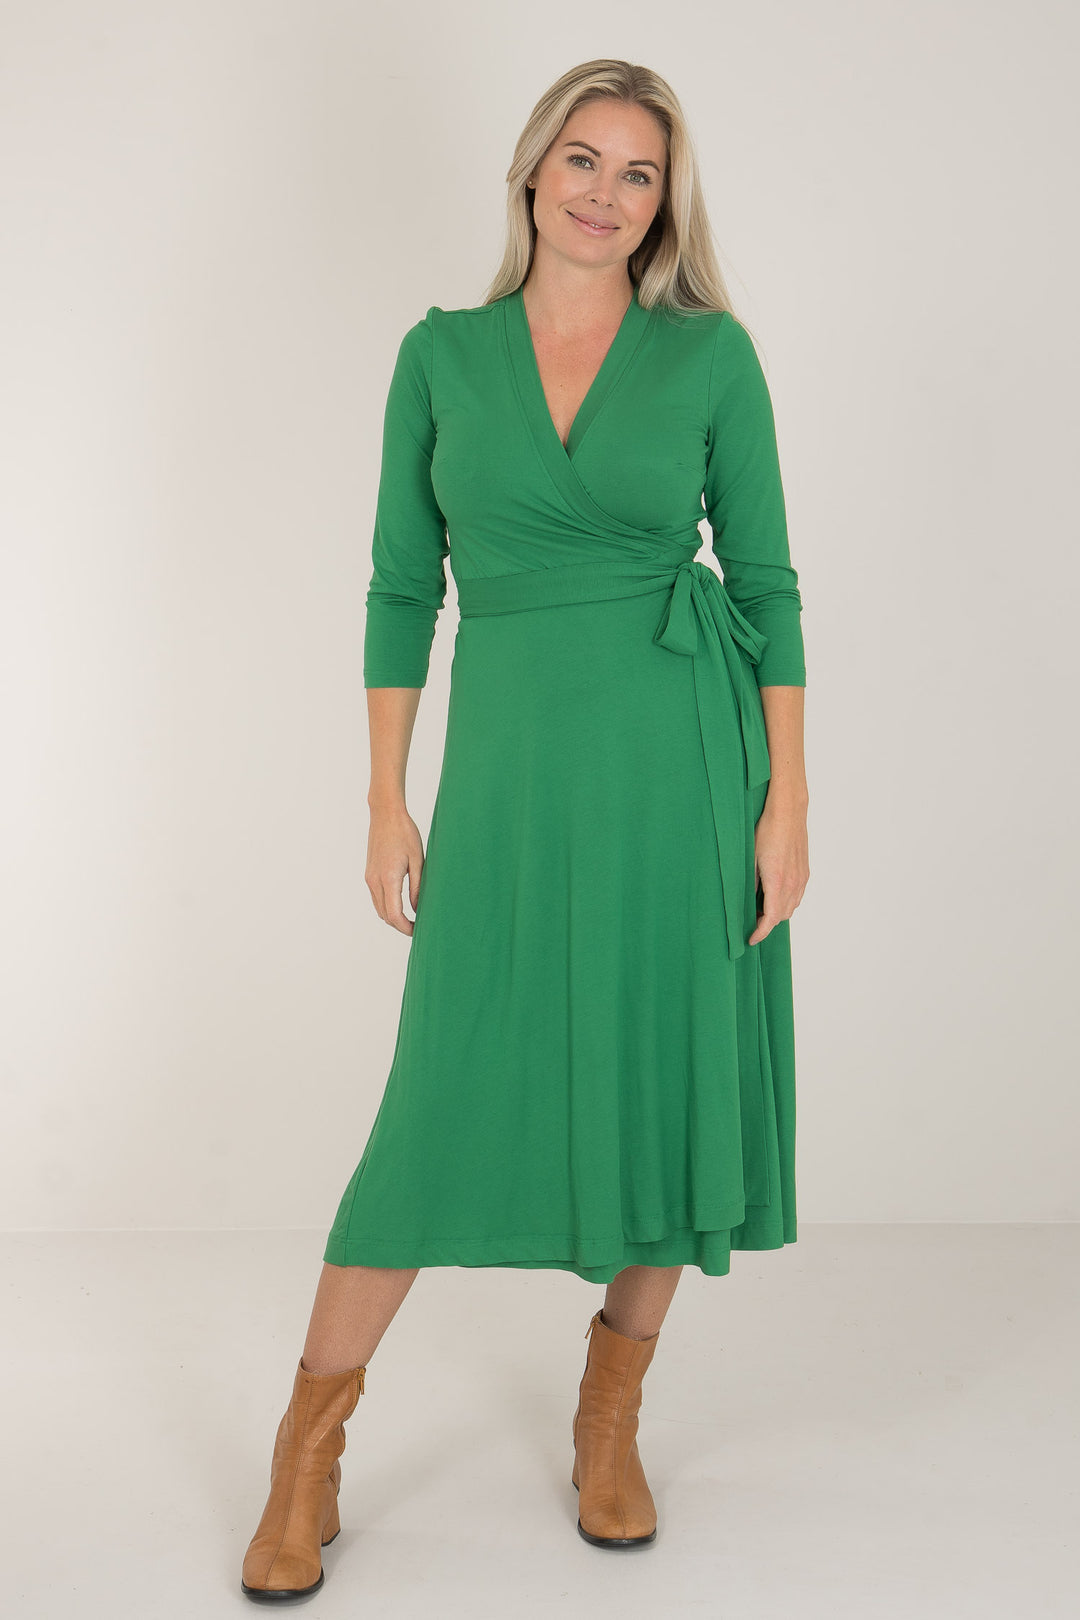 Bestie midi lenght wrap jersey dress - Green - Vadlång, grön omlottklänning i trikå